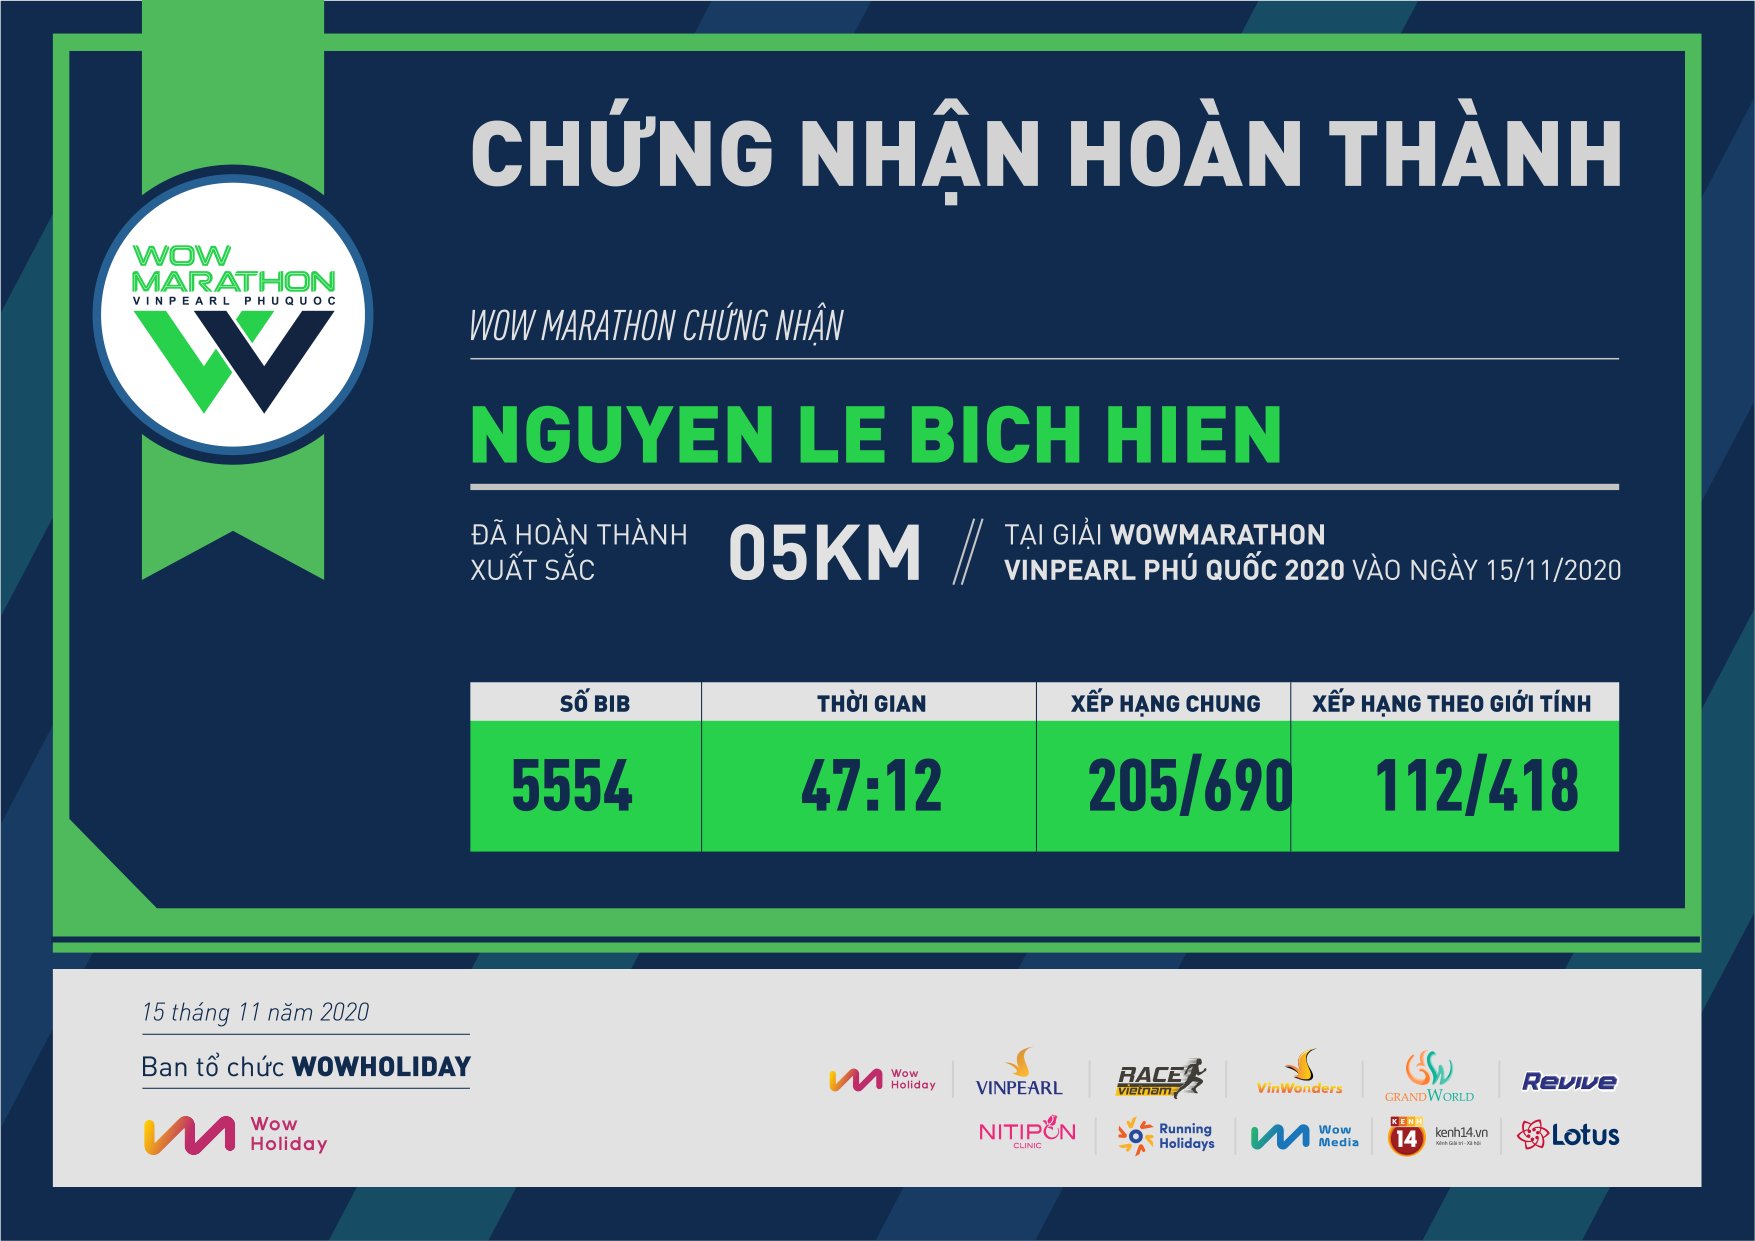 5554 - Nguyen Le Bich Hien